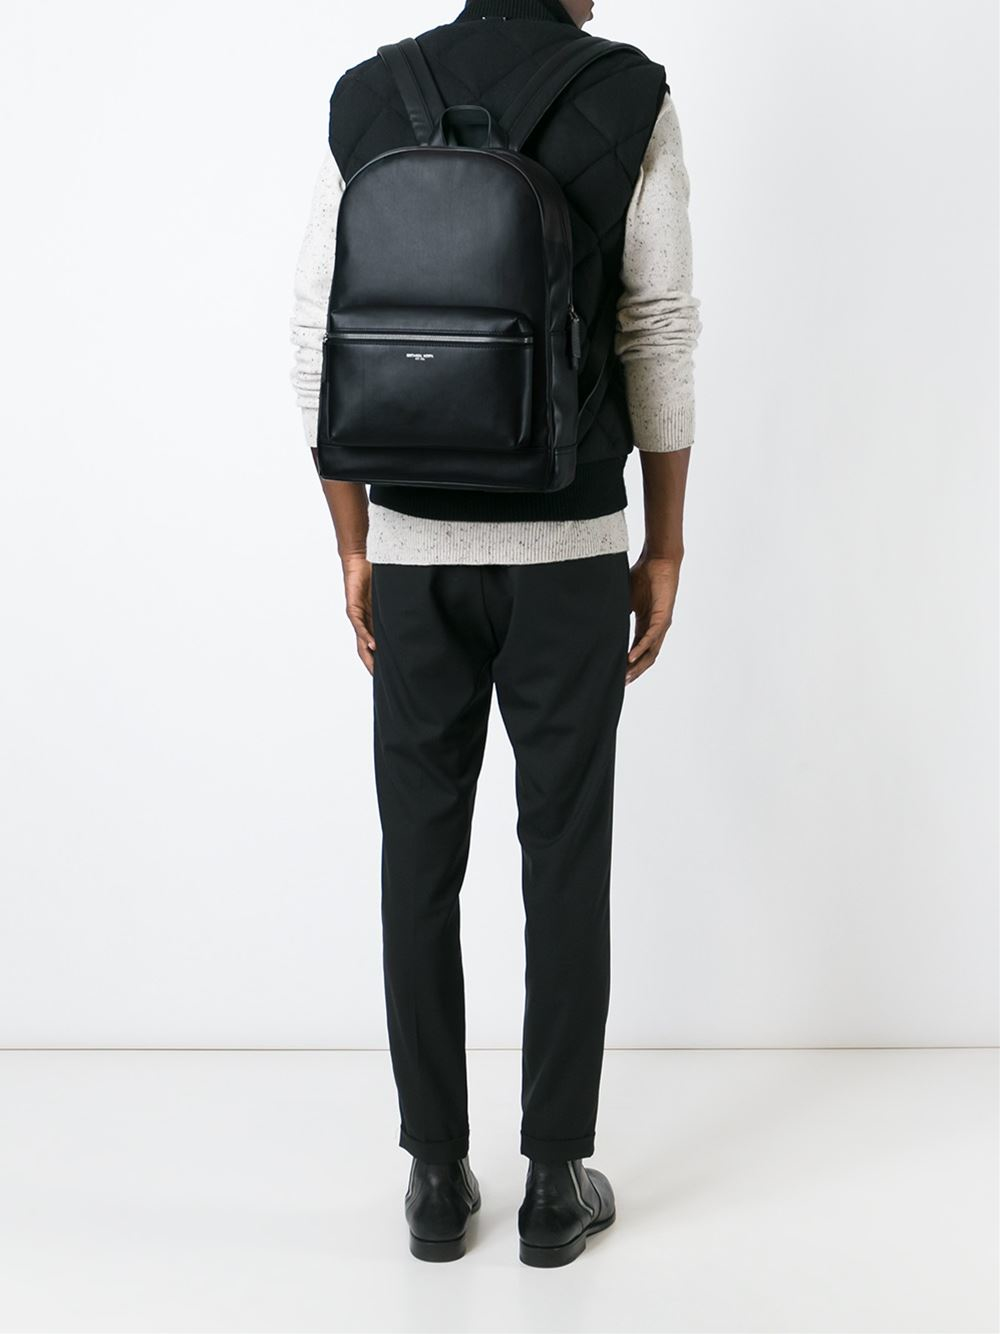 Michael Kors 'kent' Backpack in Black for Men - Lyst